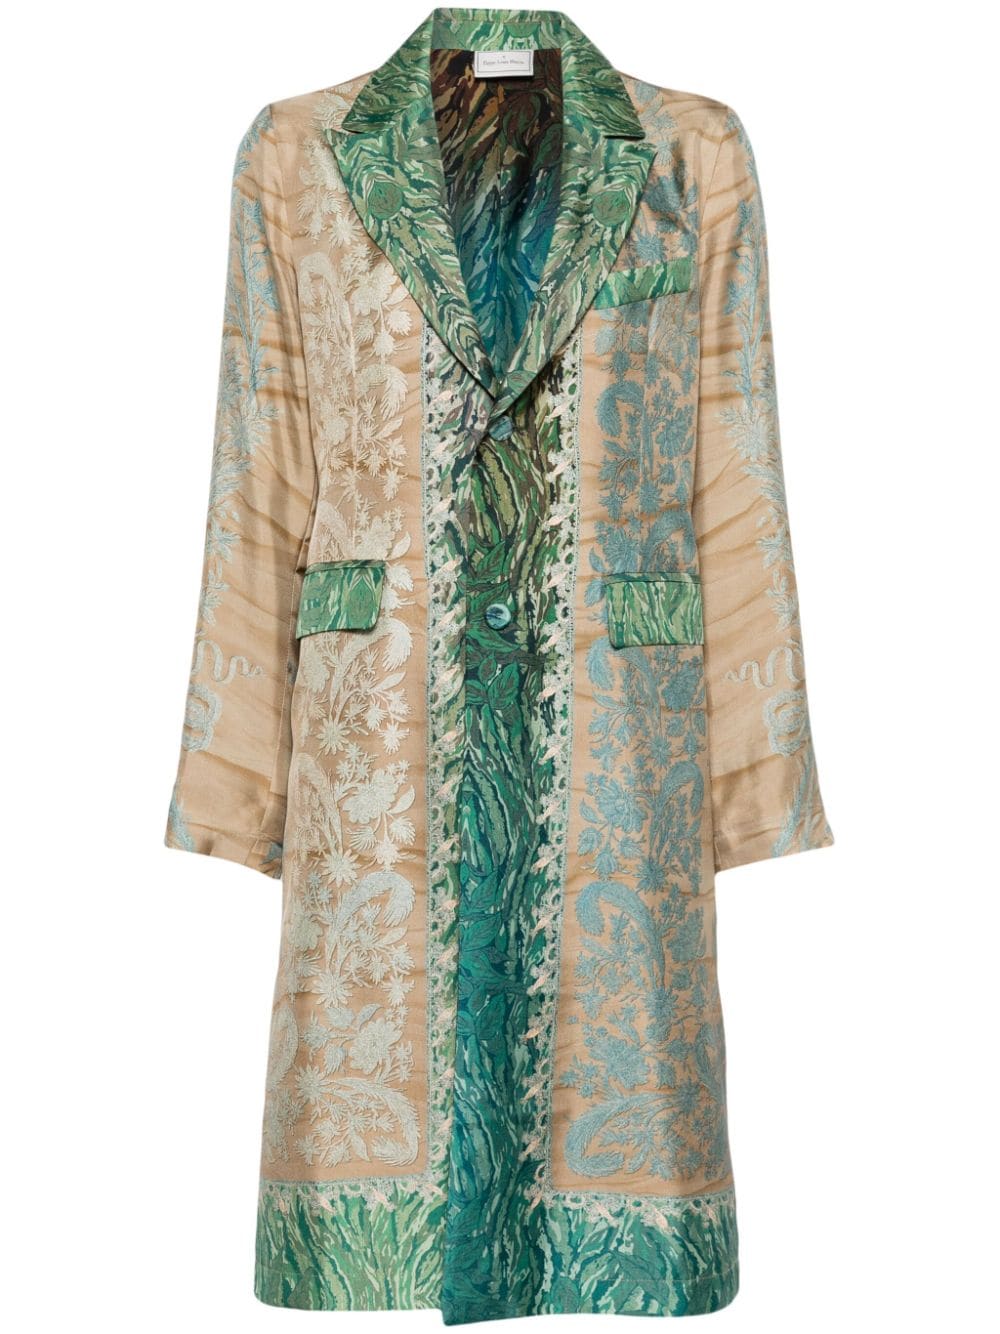 Image 1 of Pierre-Louis Mascia Aloe patterned silk coat